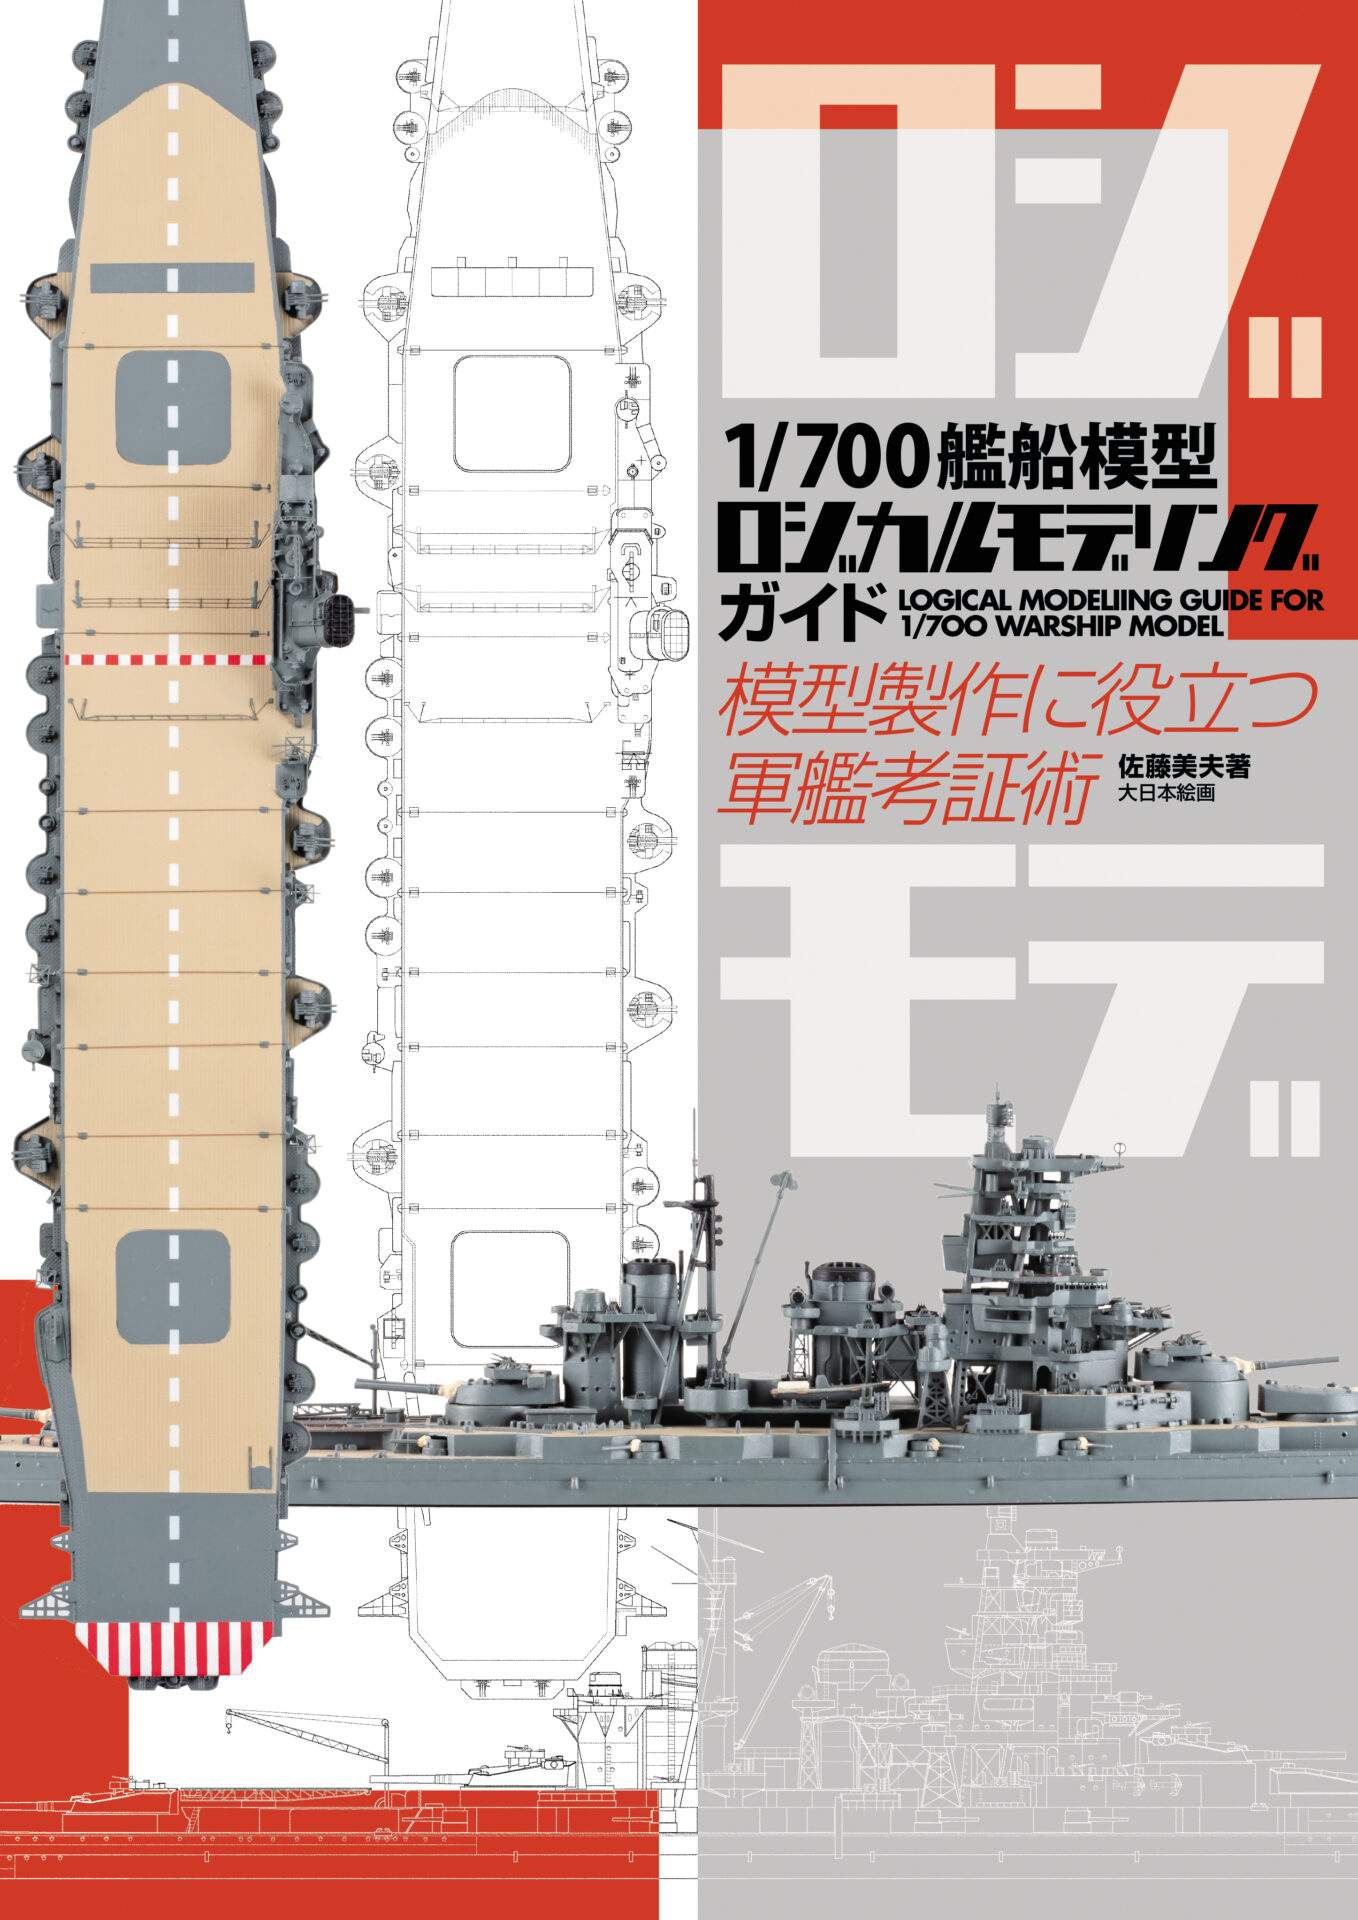 1/700艦船模型 ロジカルモデリングガイド 模型製作に役立つ軍艦考証術